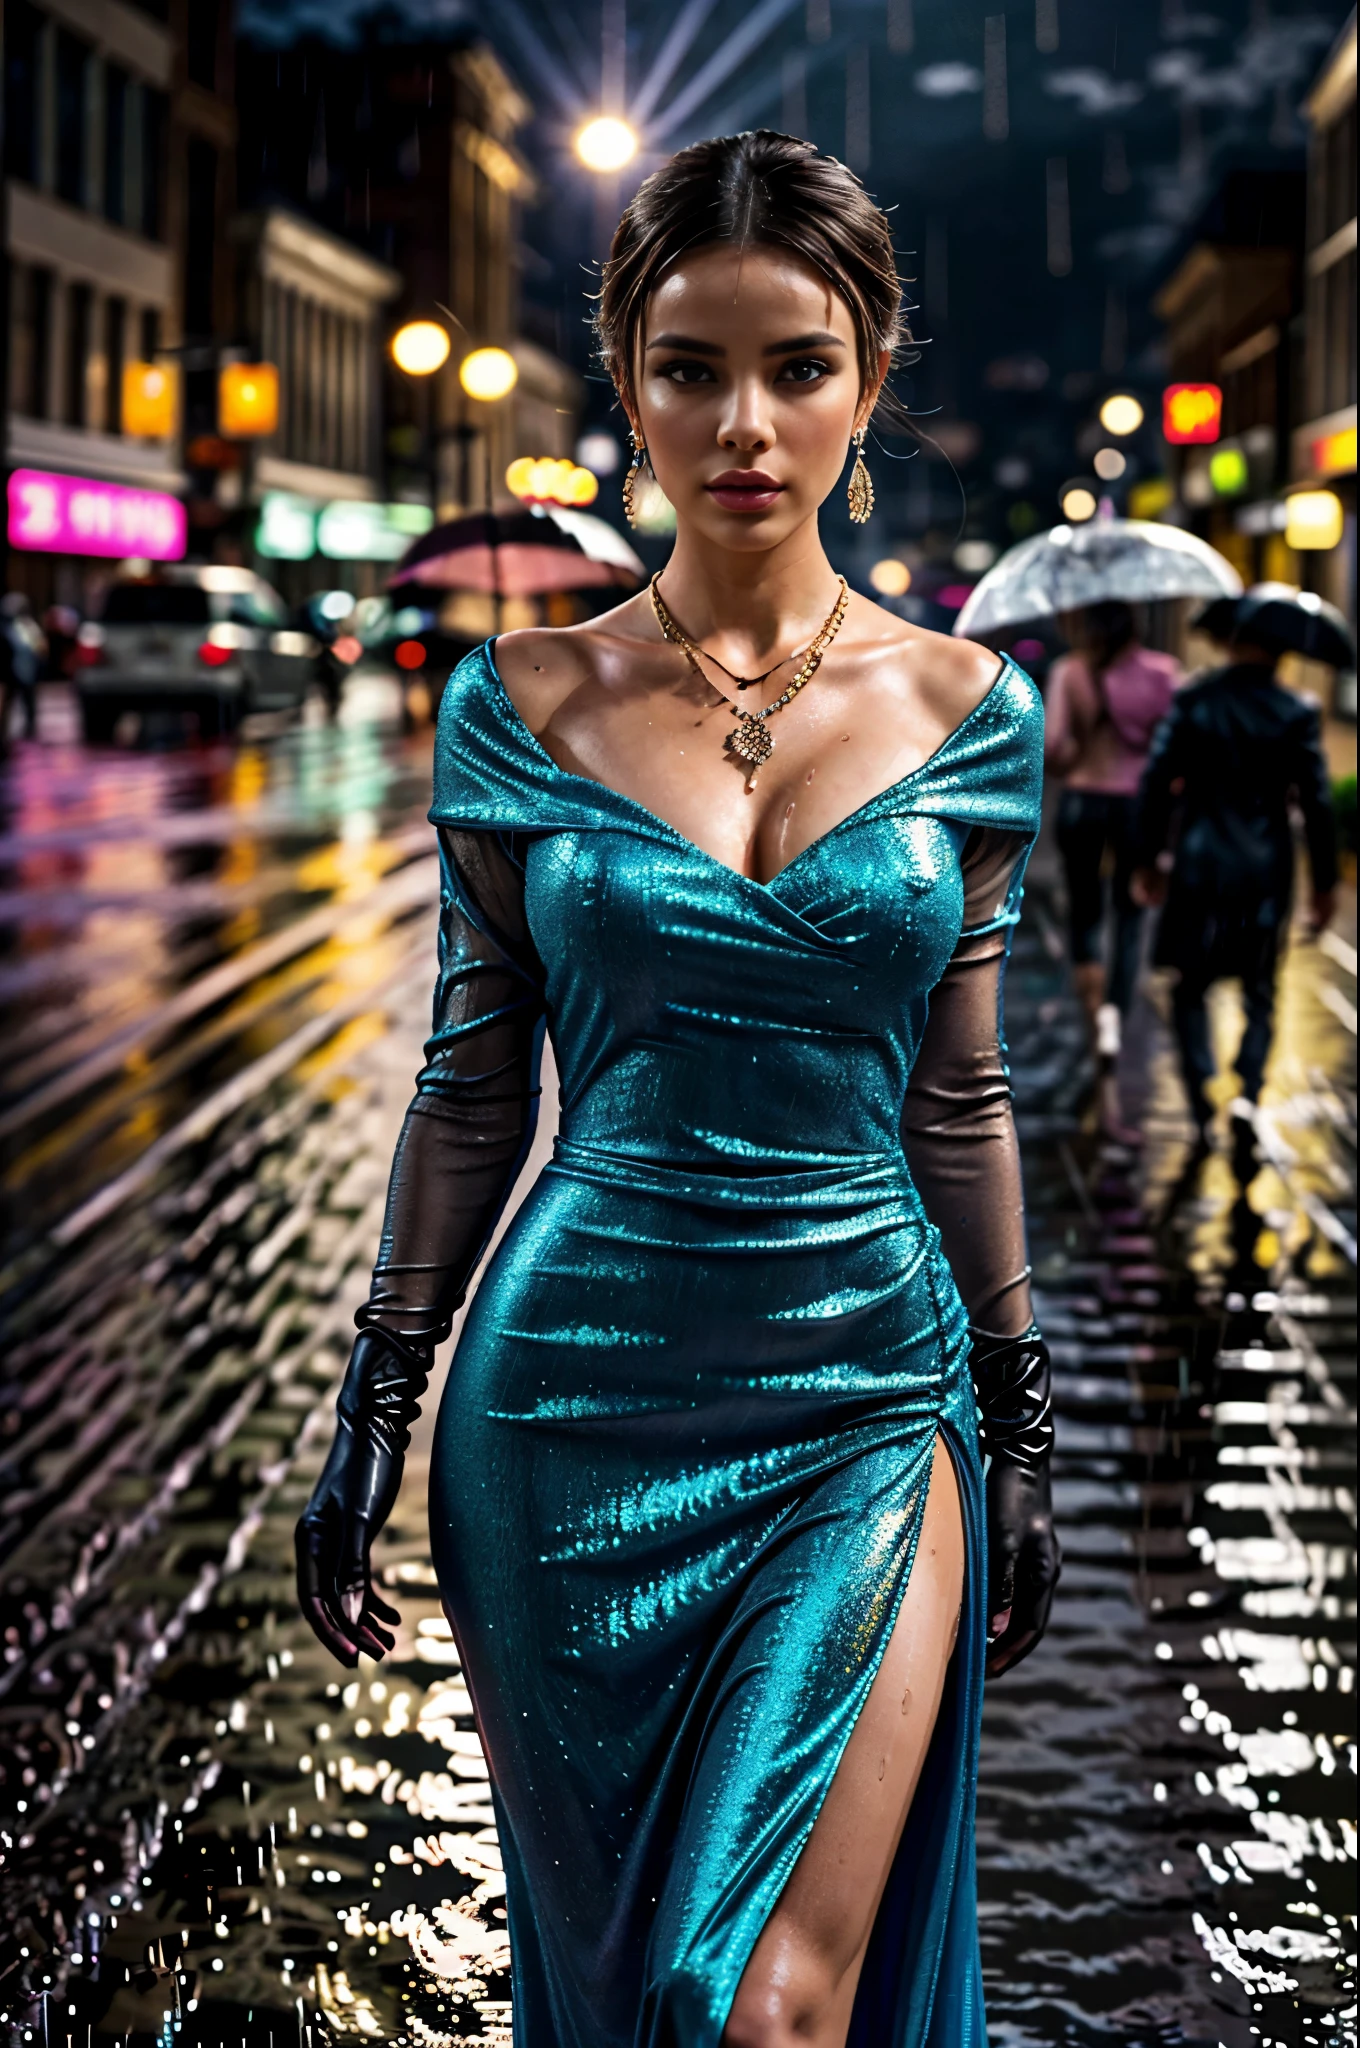 半身, 一個穿著晚禮服的美麗女孩, 長手套, 項鍊及各種配件, 下雨天晚上人很多的繁華鬧市區, (雨是透過運動模糊效果來表達的: 1.4), 詳細的臉, 優雅的, 電影燈光, 高端時尚, 複雜的服裝設計, 飄逸布料, 奢華, 豐富的, 戲劇性的色彩, 豐富的音色, 迷人的, 空靈的, 精美的, (最好的品質,4k,8K,高解析度,傑作:1.2),超詳細,(實際的,photo實際的,photo-實際的:1.37),高動態範圍,超高畫質,演播室燈光,超細塗裝,銳利的焦點,基於物理的渲染,極為詳細的描述,專業的,鮮豔的色彩,散景,時尚攝影